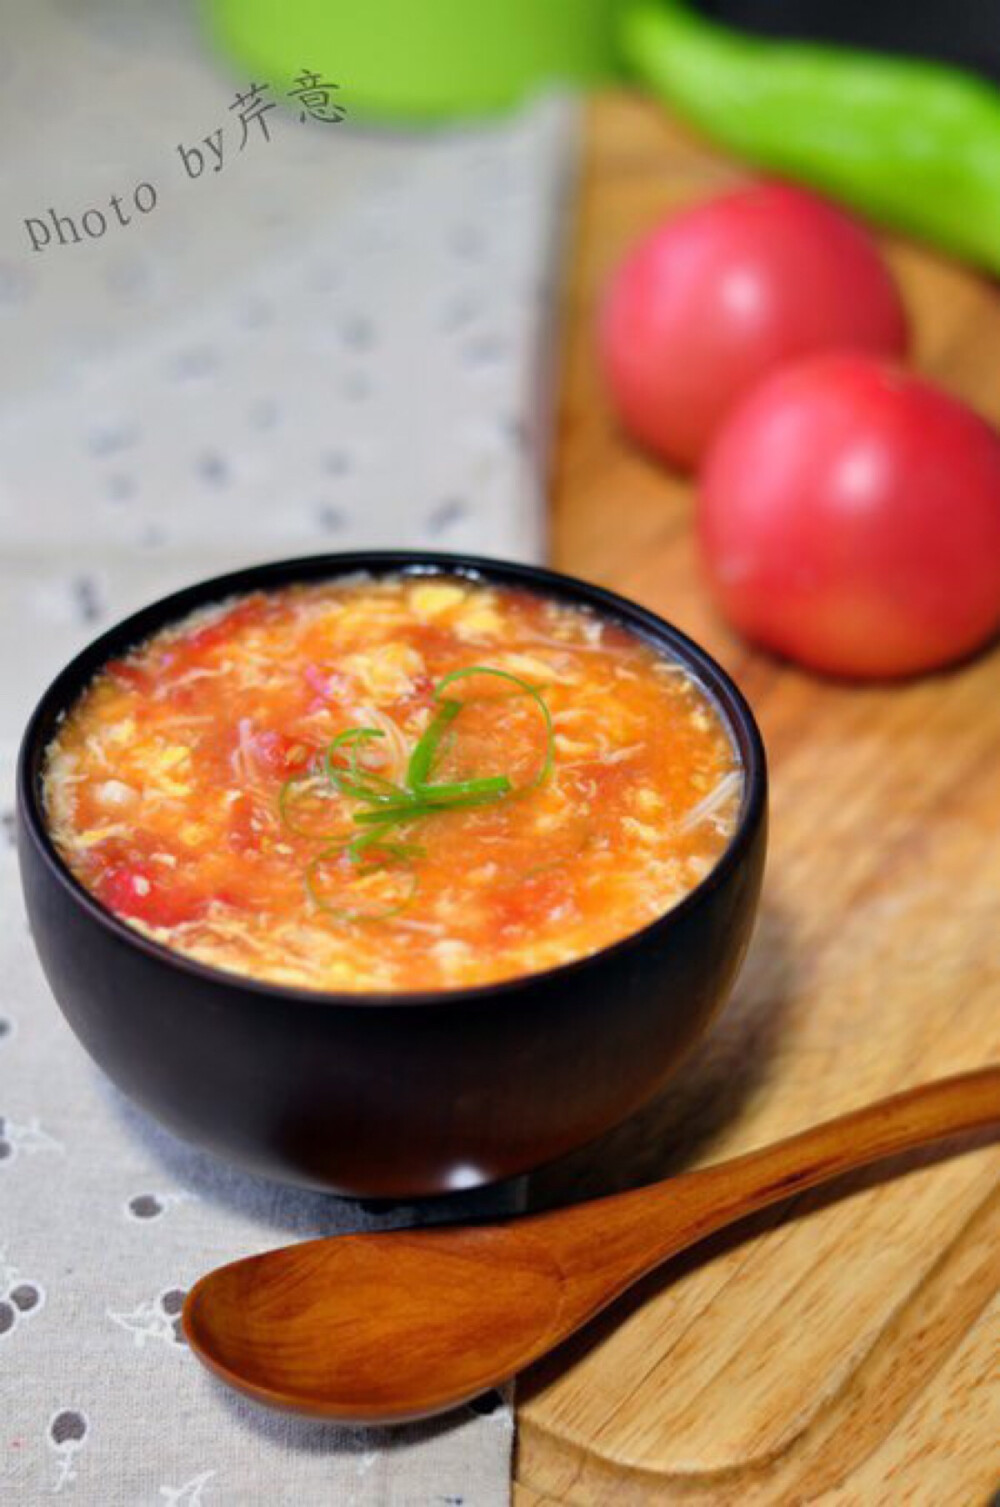 【番茄金针蛋花汤】材料:中等大小西红柿2个,金针菇